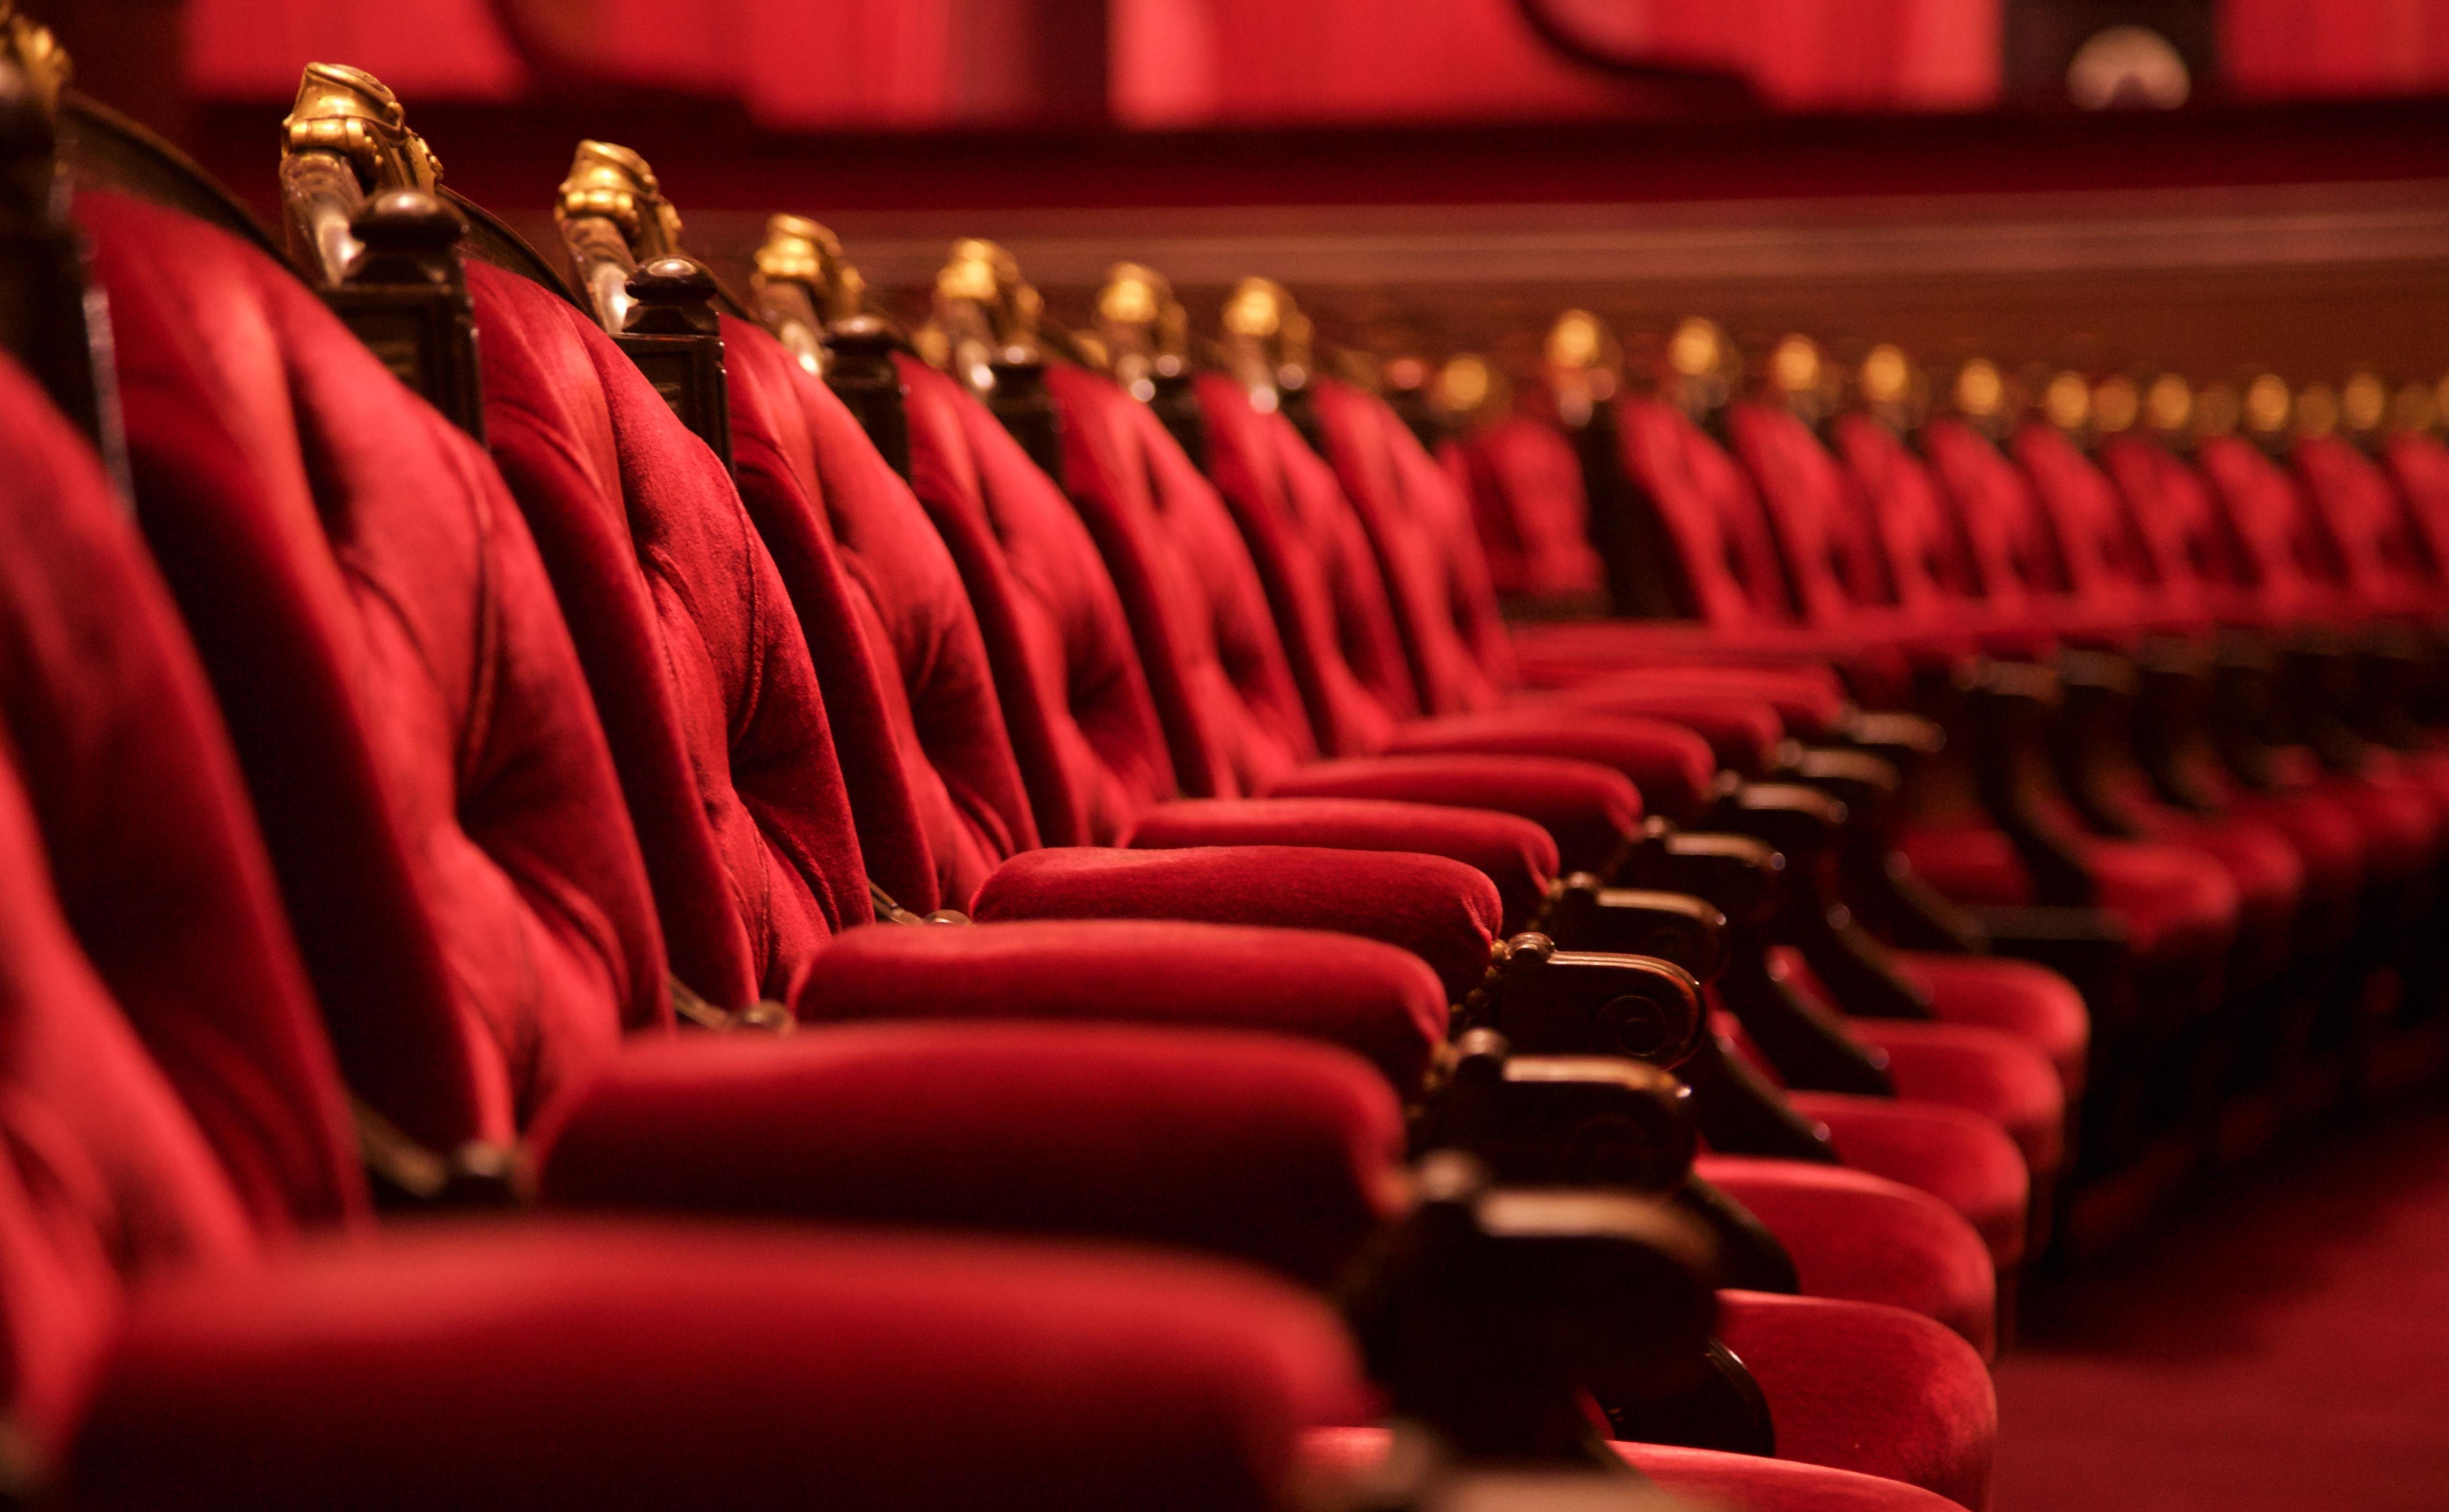 Последний ряд в театре. Кресла в театре. Театральные кресла в зале. Красные сиденья в театре. Красные кресла в театре.